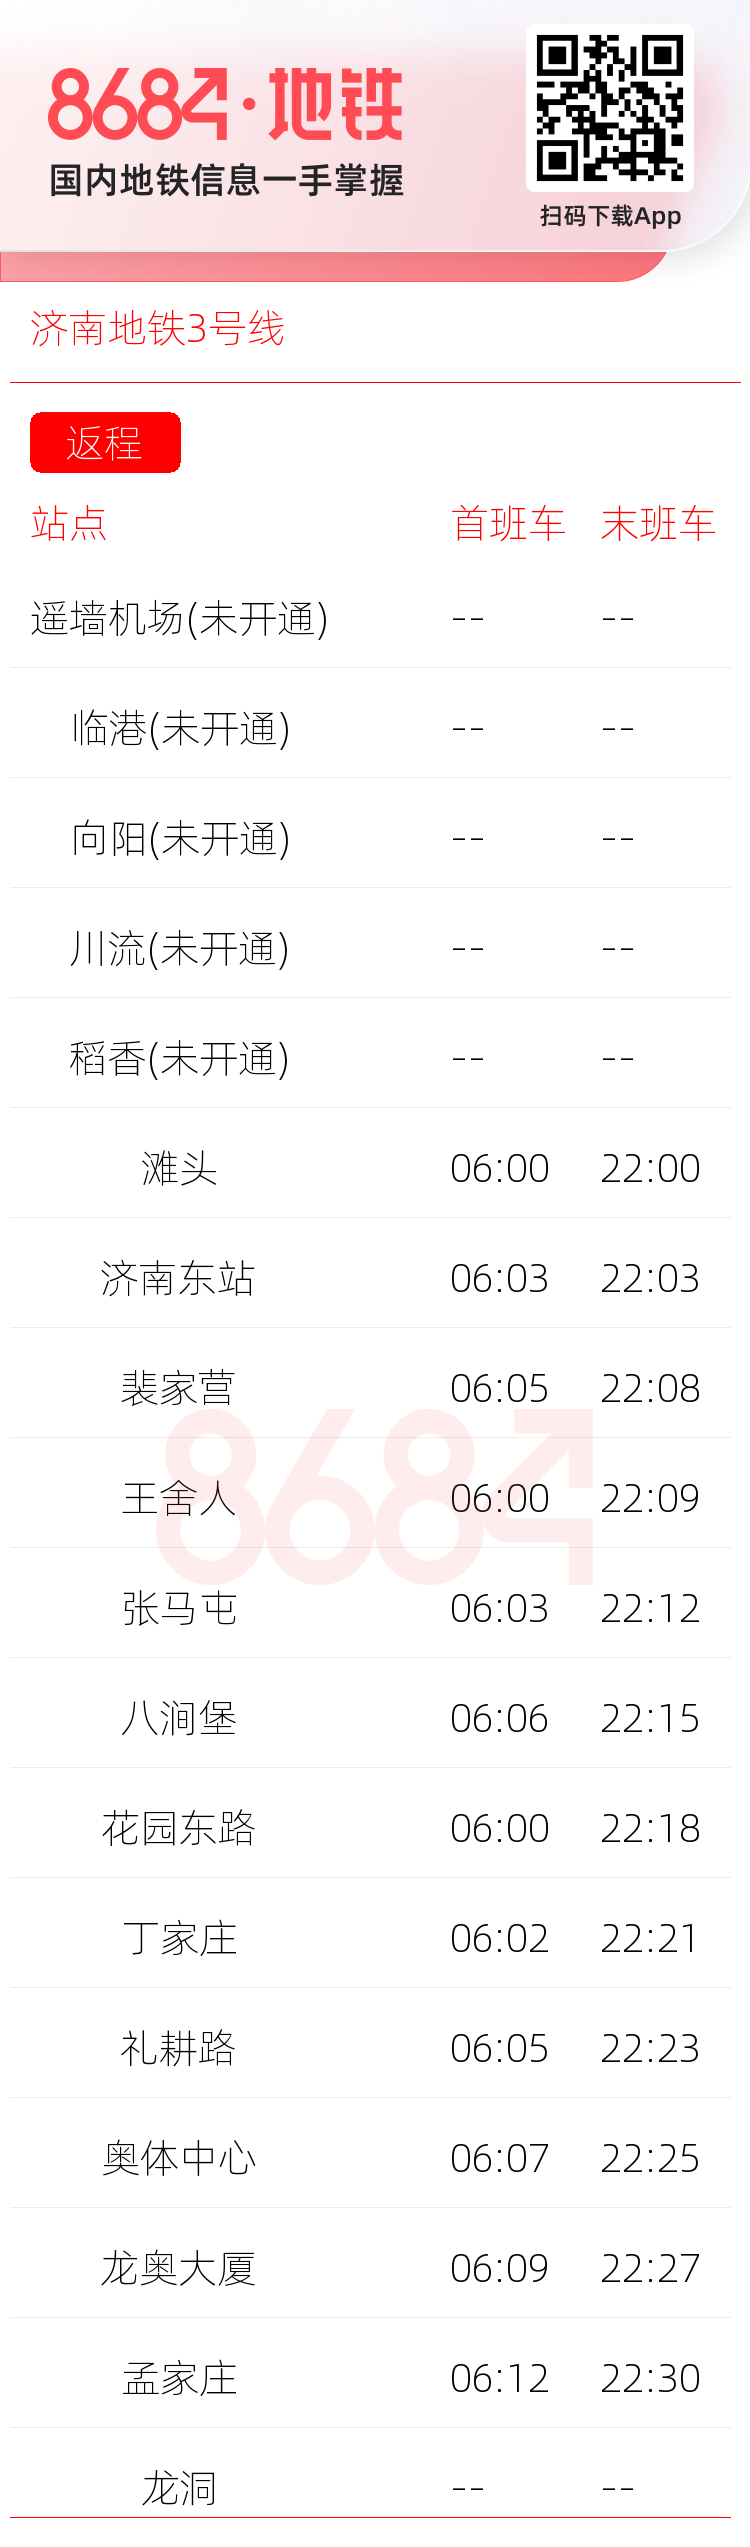 济南地铁3号线运营时间表